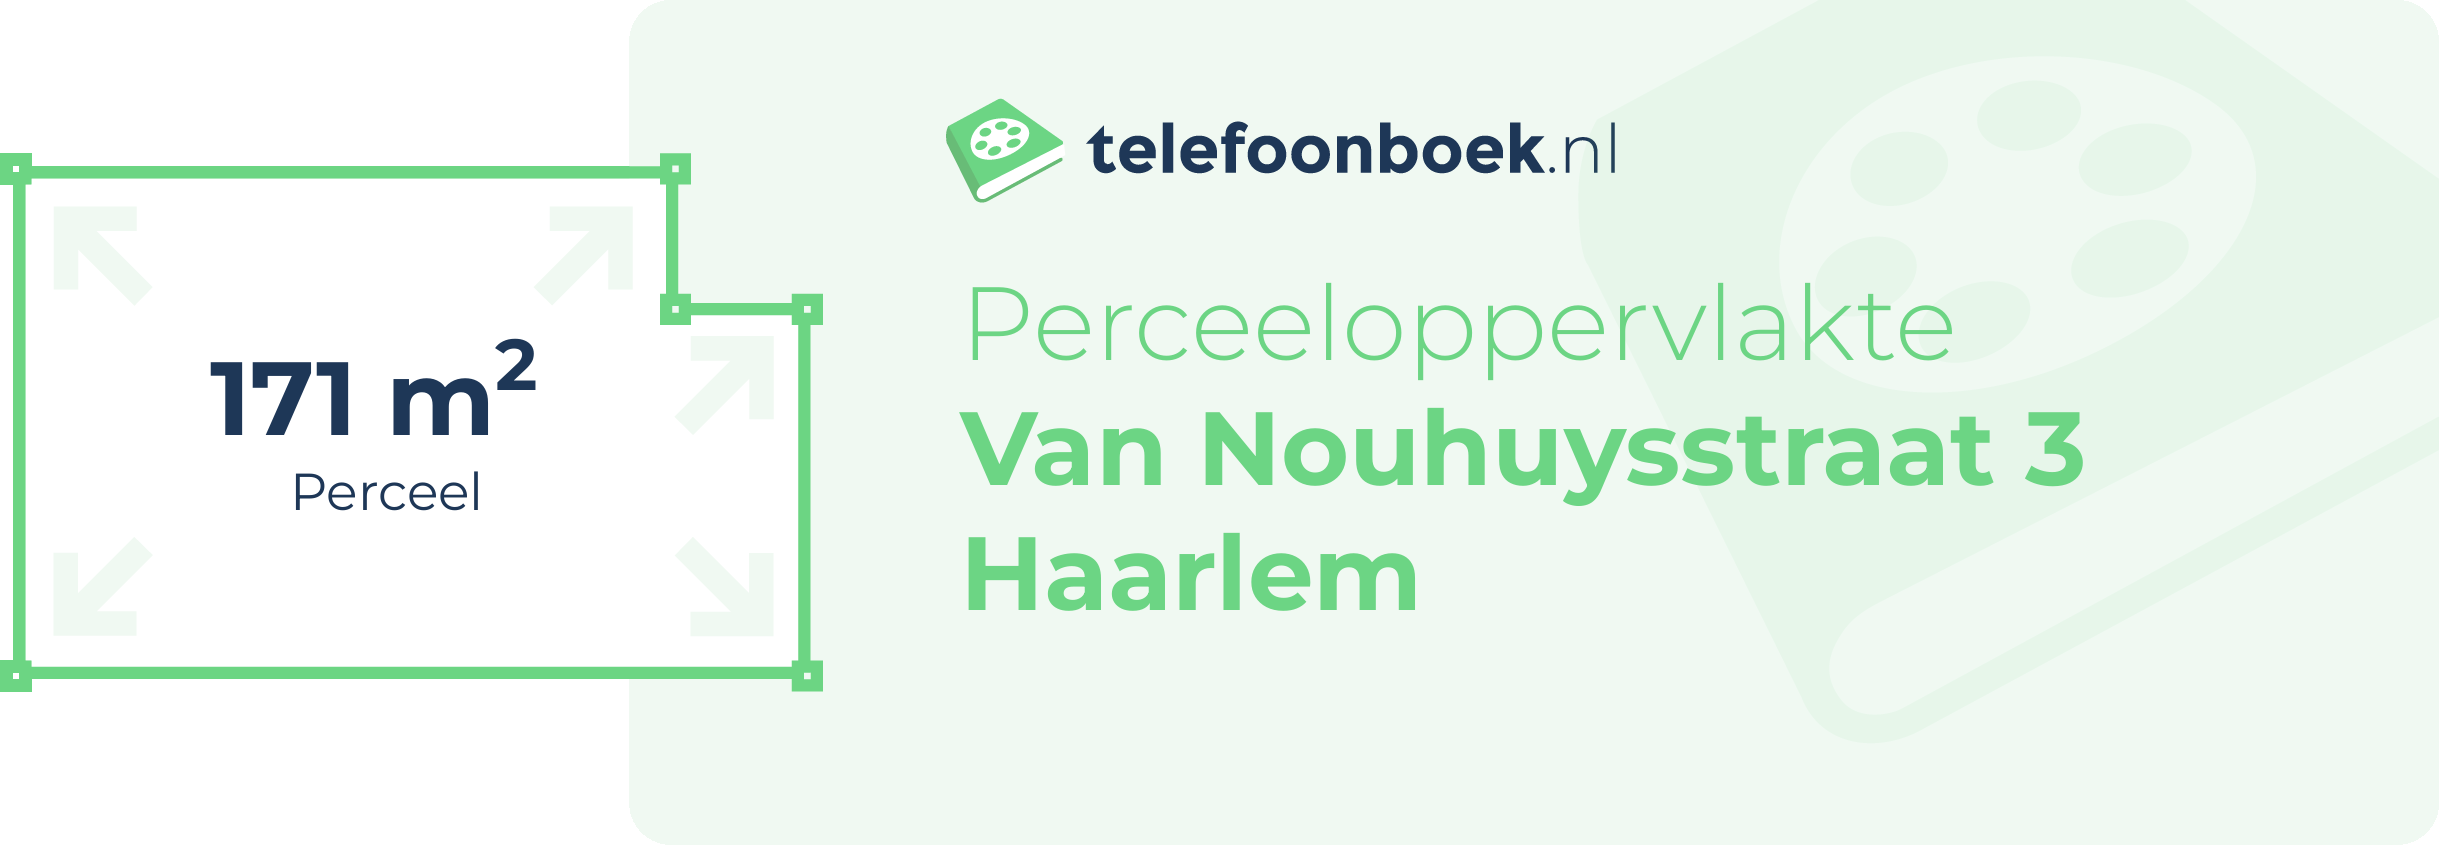 Perceeloppervlakte Van Nouhuysstraat 3 Haarlem